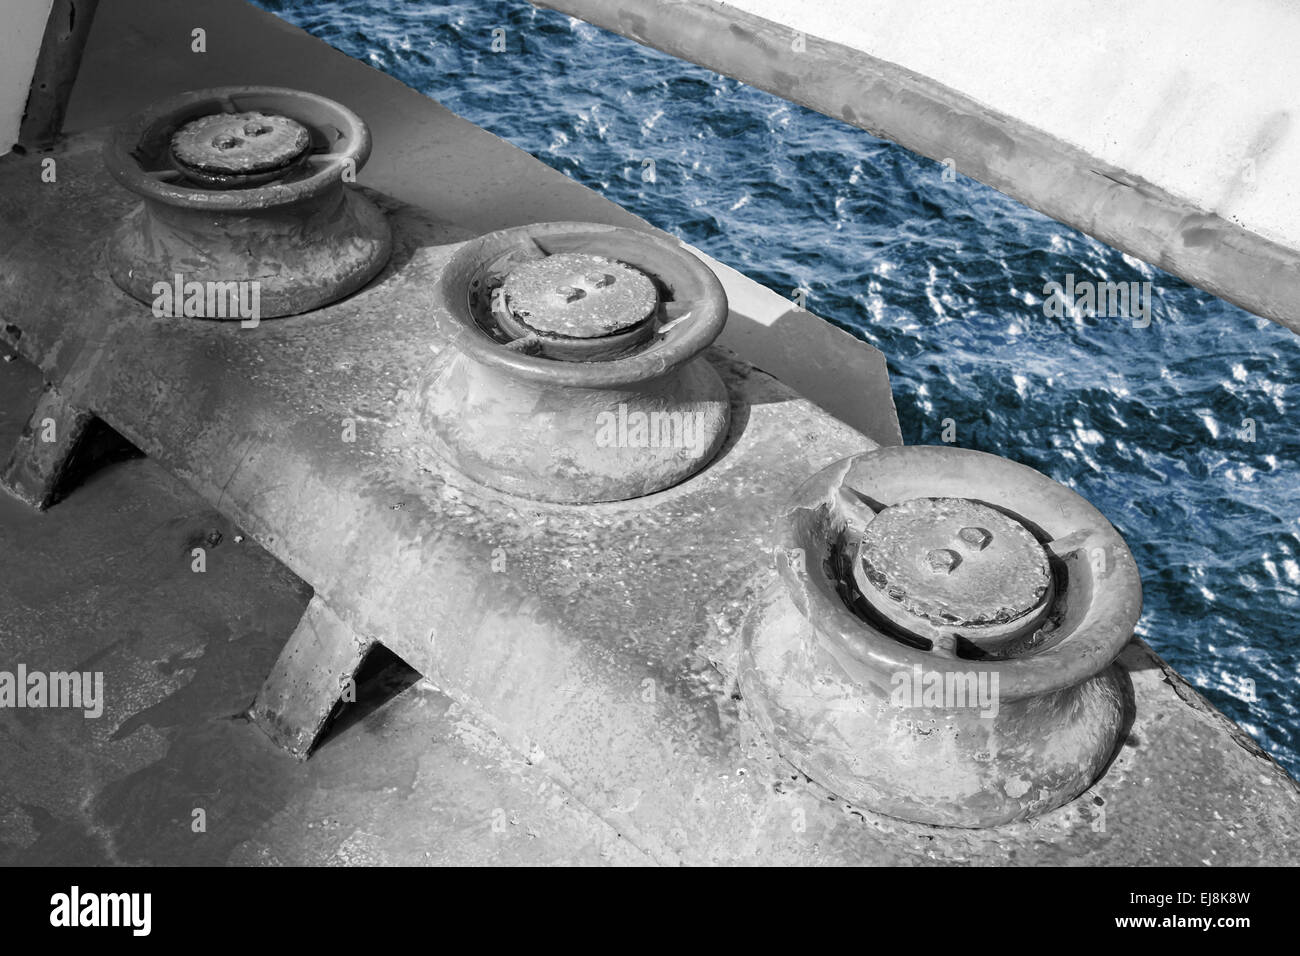 Vieux grungy rouleaux pour amarres, navire industriel fragment monochrome bleu avec de l'eau de mer Banque D'Images